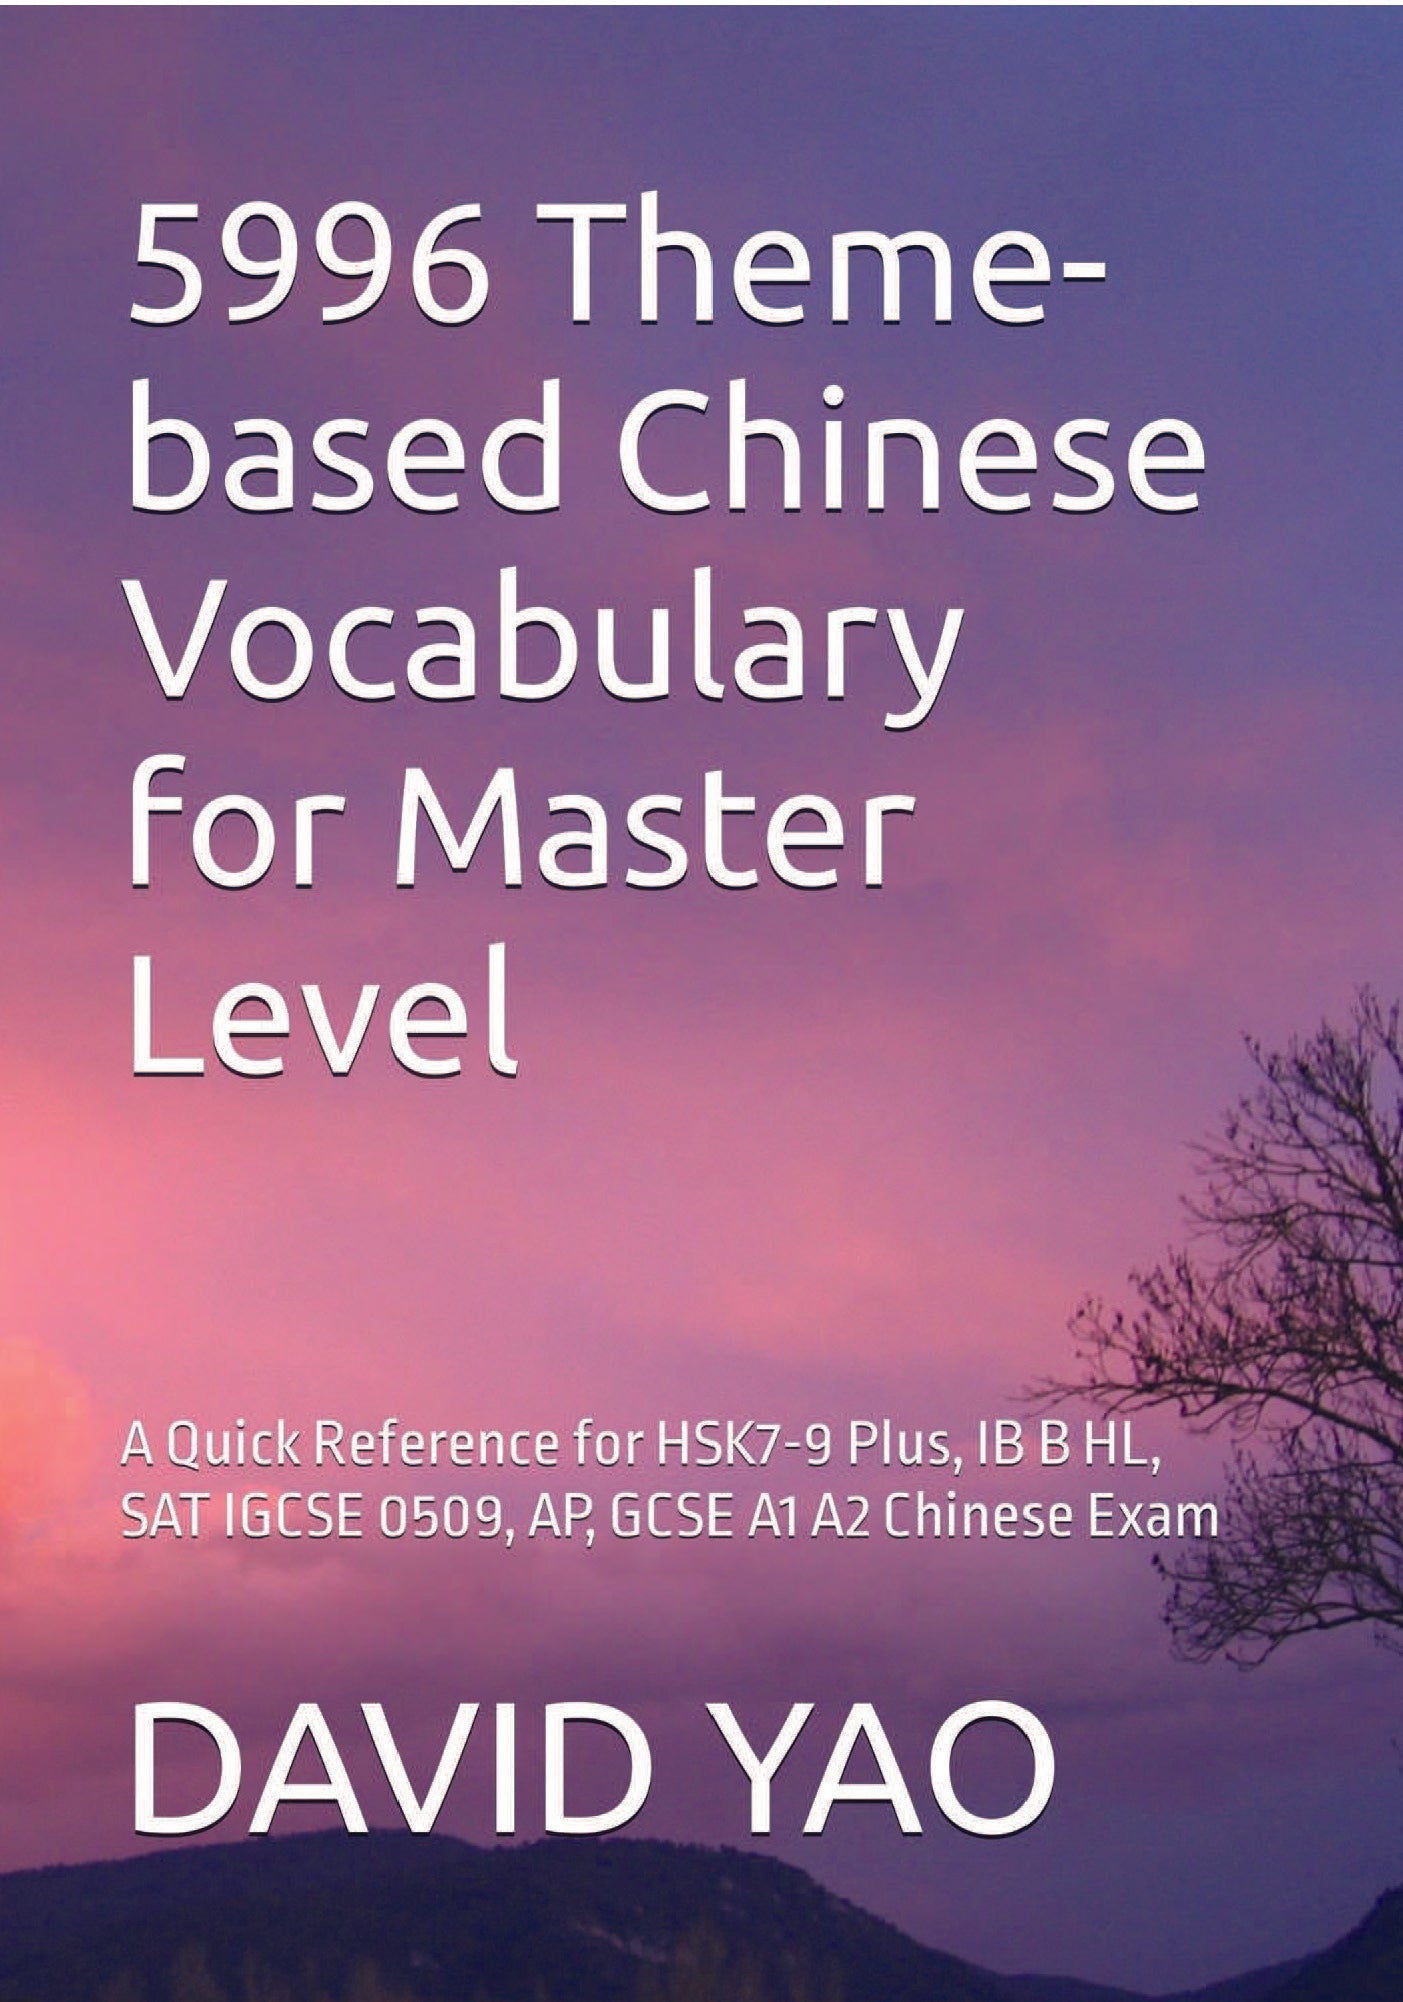 5996 Theme-based Chinese Vocabulary for Master Level